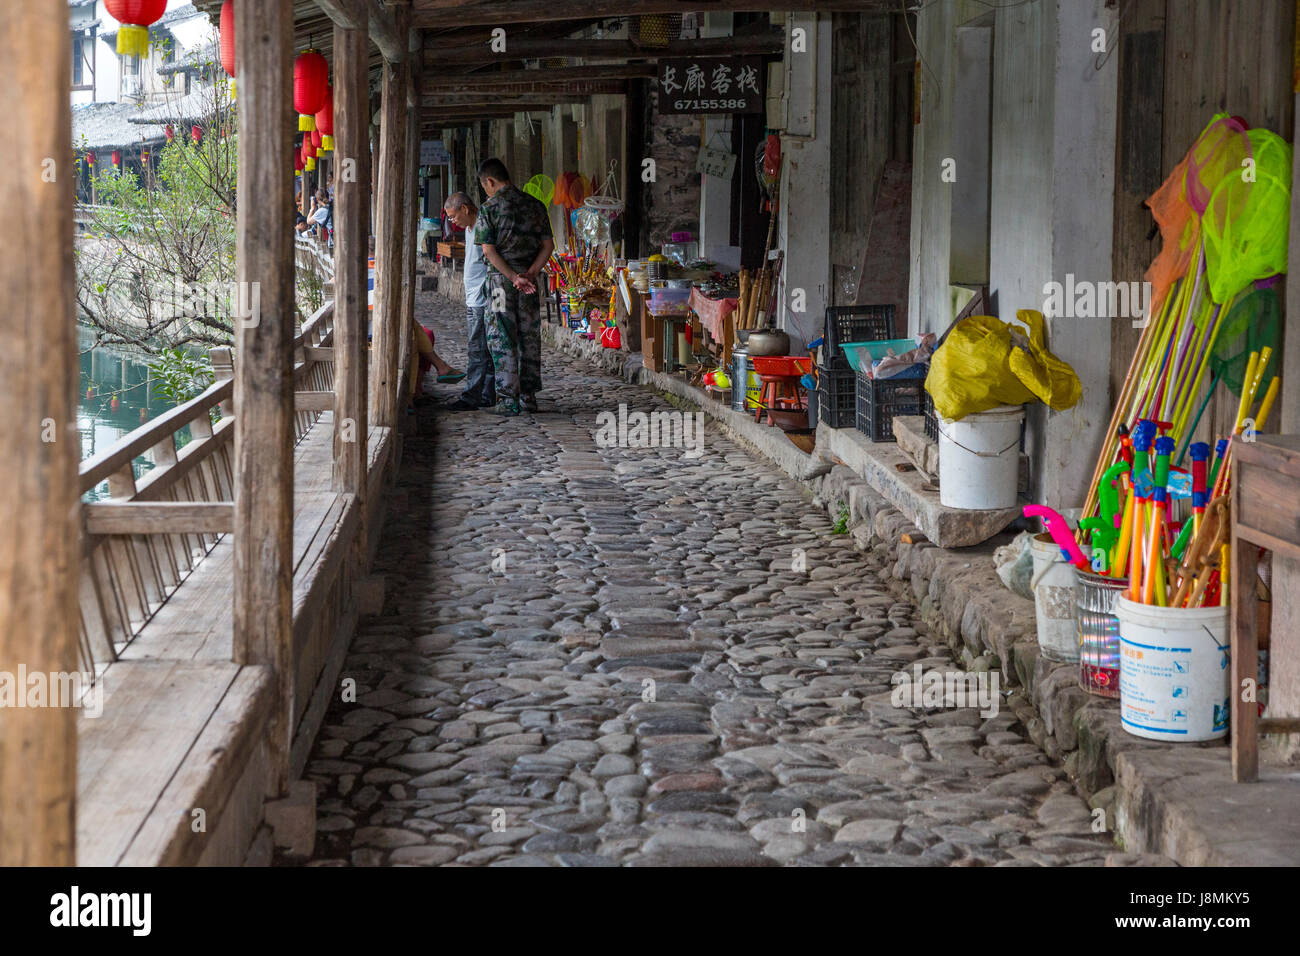 Yantou, Yongjia, Zhejiang, Chine. Marchandises des vendeurs de rue, ligne de Shanghai qui remonte à la 16e. Siècle. Banque D'Images